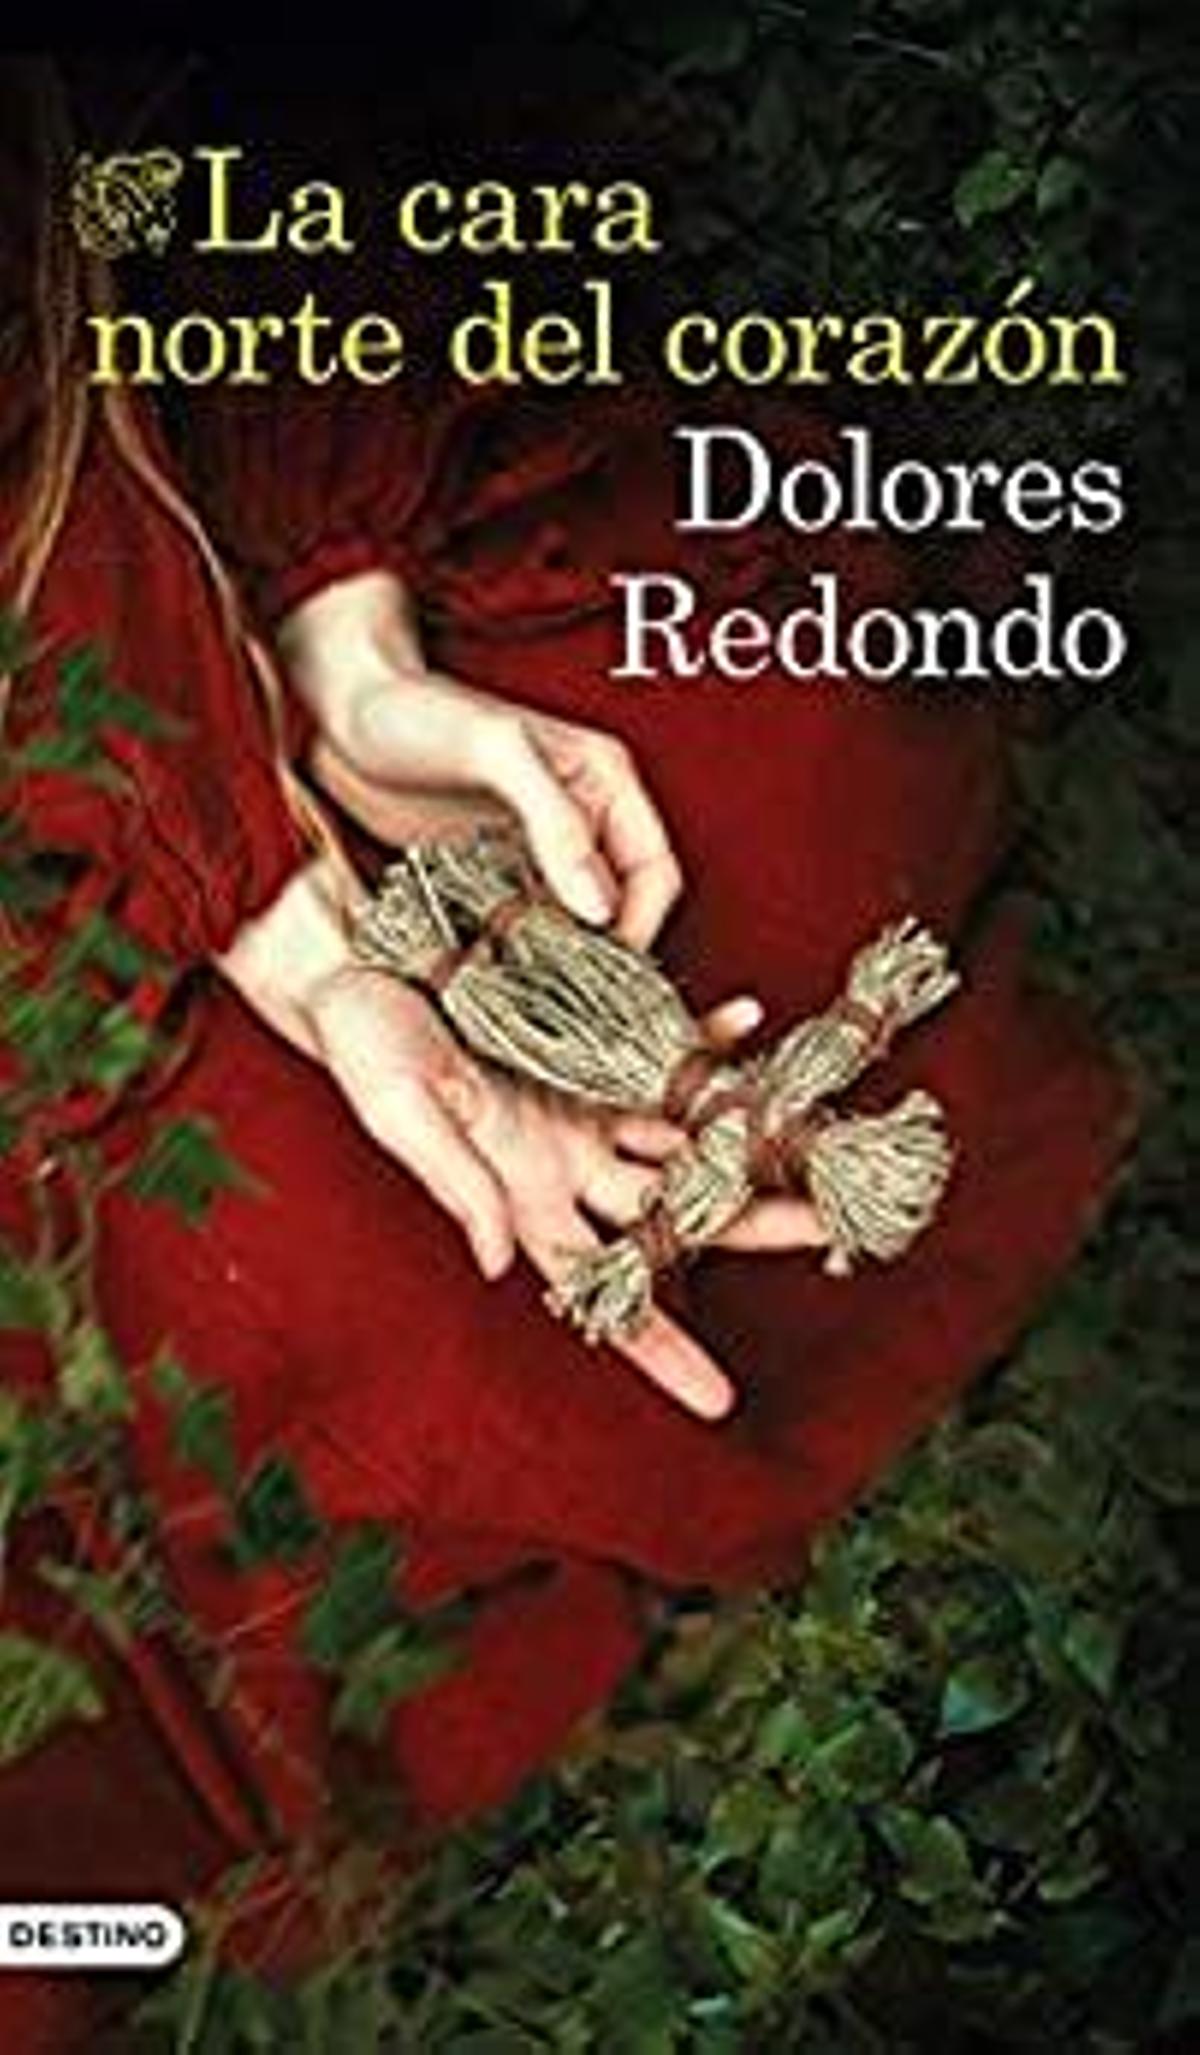 'La cara norte del corazón' de Dolores Redondo (Precio: 12,34 euros)